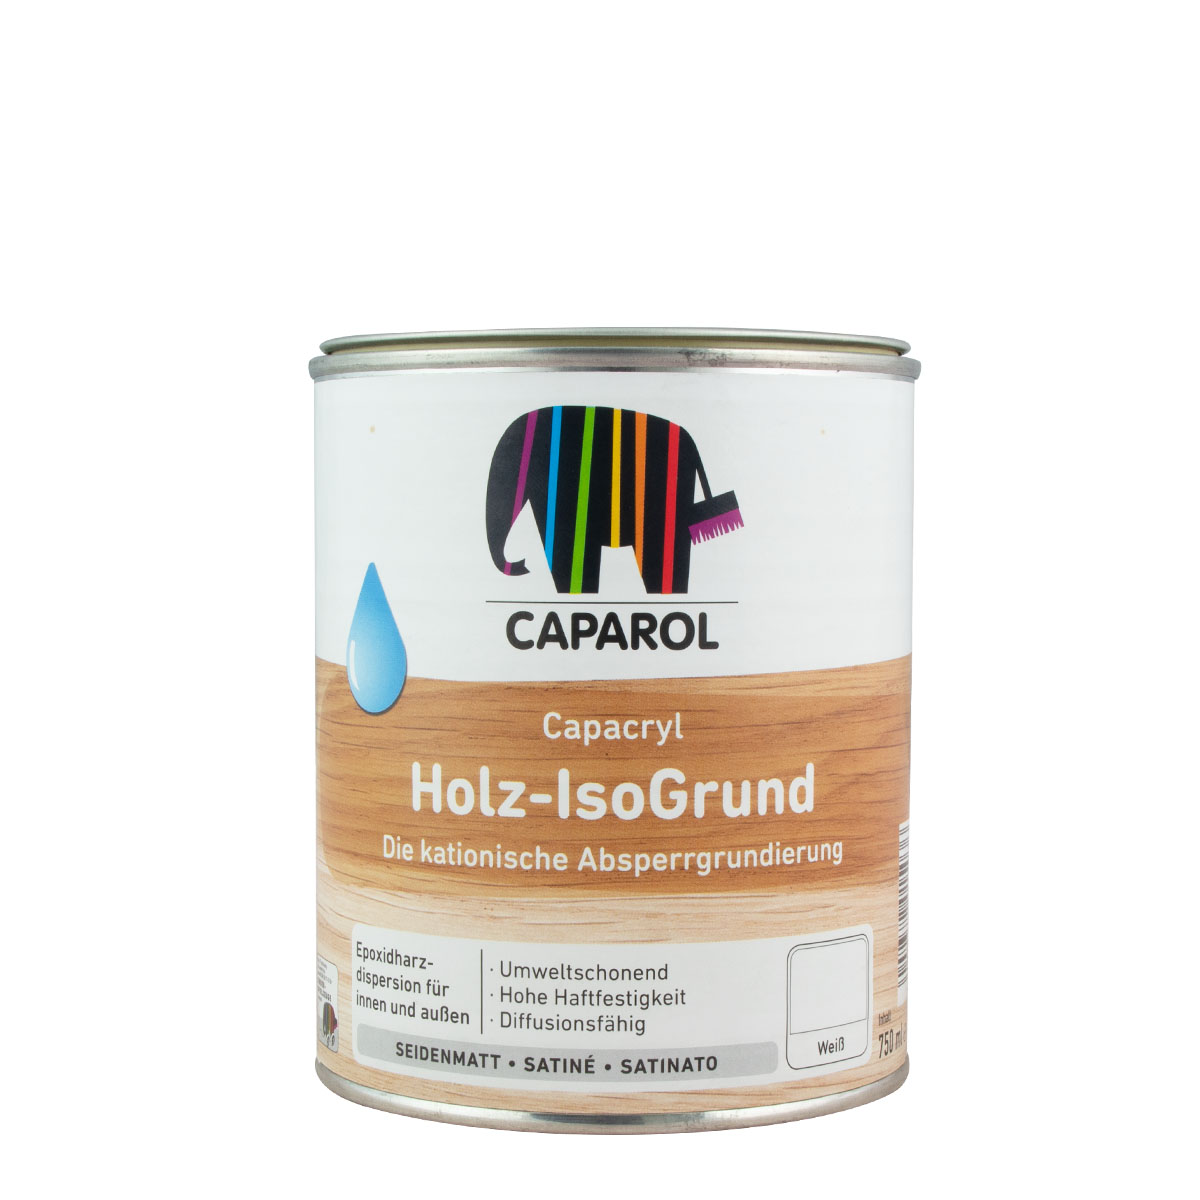 Caparol_capacryl_holz-isogrund_750ml_gross